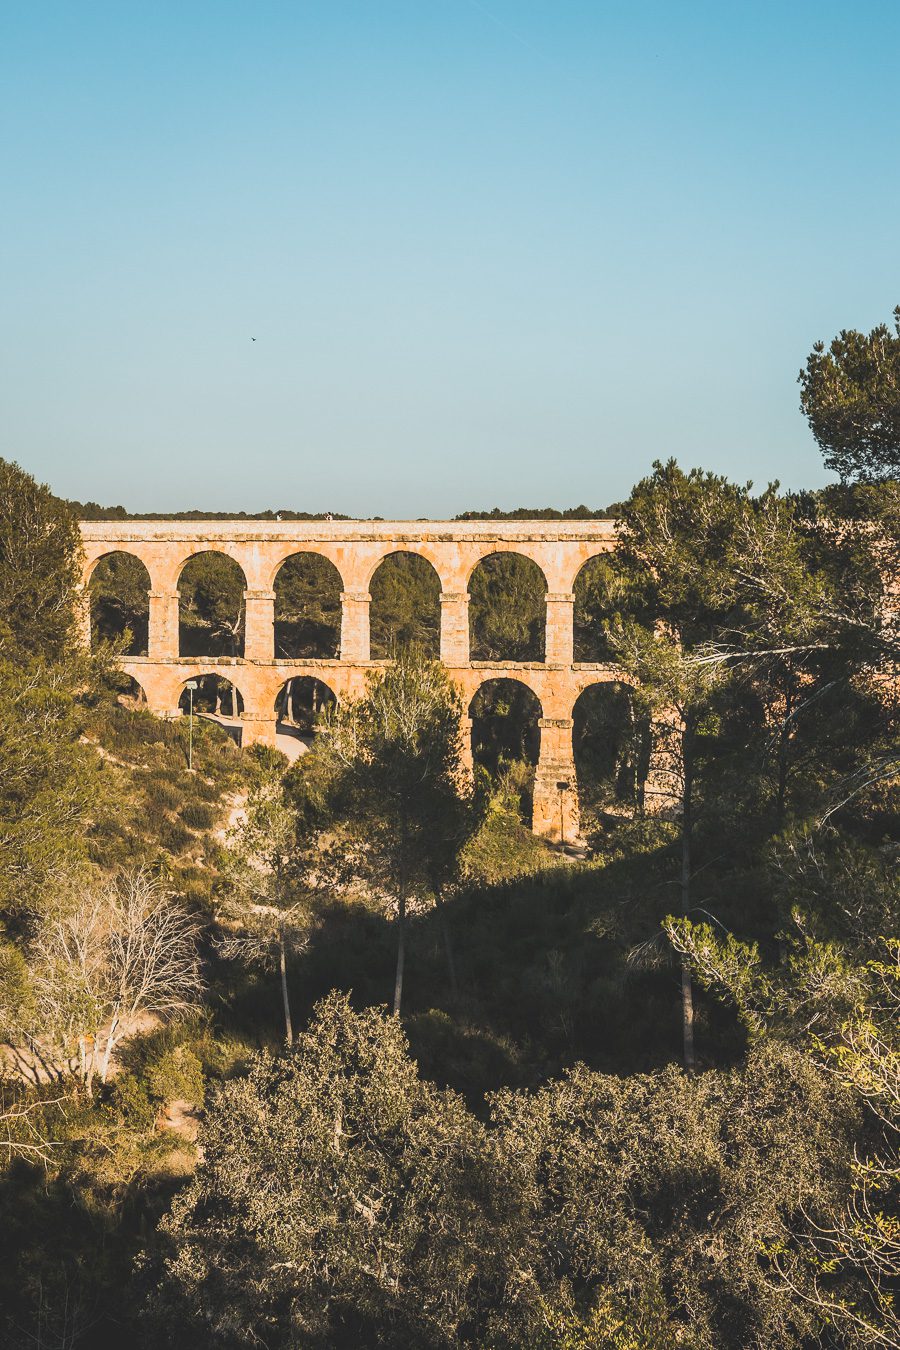 Découvrez Tarragone et ses alentours, en Catalogne. Entre ses plages, son riche patrimoine et ses paysages spectaculaires, Tarragone offre une expérience inoubliable. Explorez les ruines romaines, détendez-vous sur les plages ou partez en randonnée à travers les magnifiques paysages du Parc Naturel de l'Ebre. Ne manquez pas de découvrir cette destination lors d'un prochain voyage en Espagne. Planifiez dès maintenant votre escapade à Tarragone.